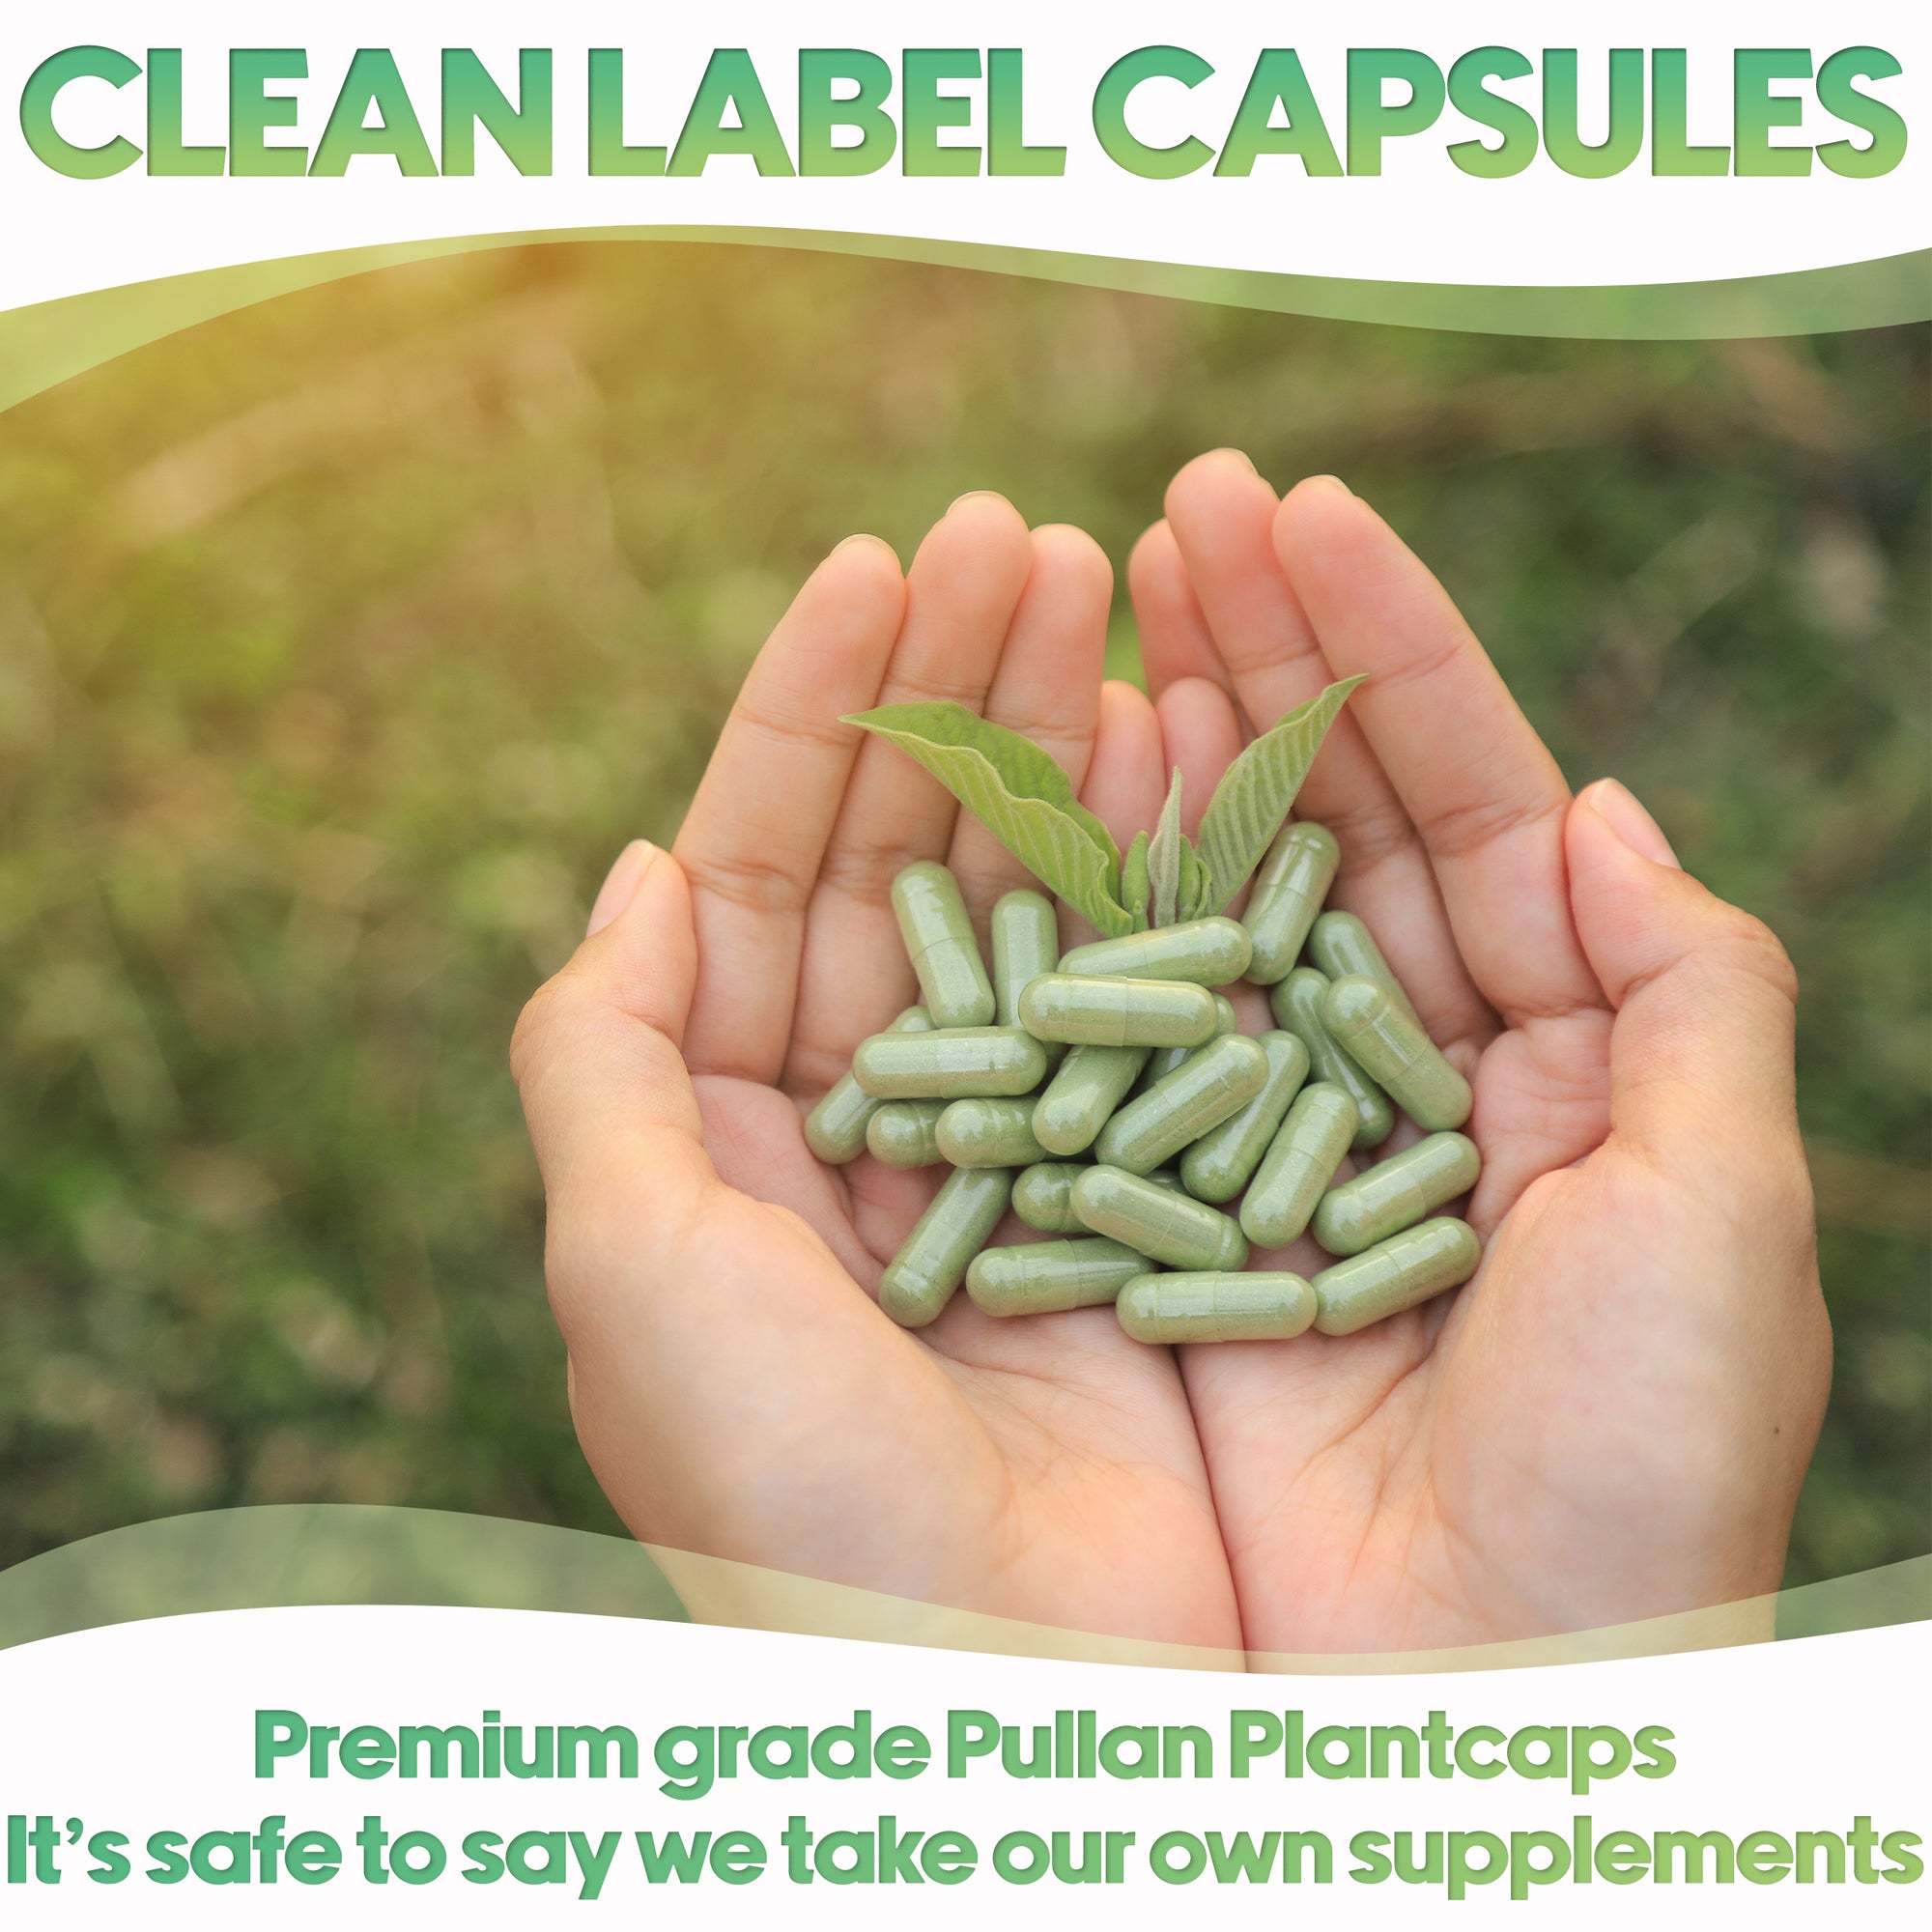 Pullulan Clear Vegan Plantcaps Empty Capsules